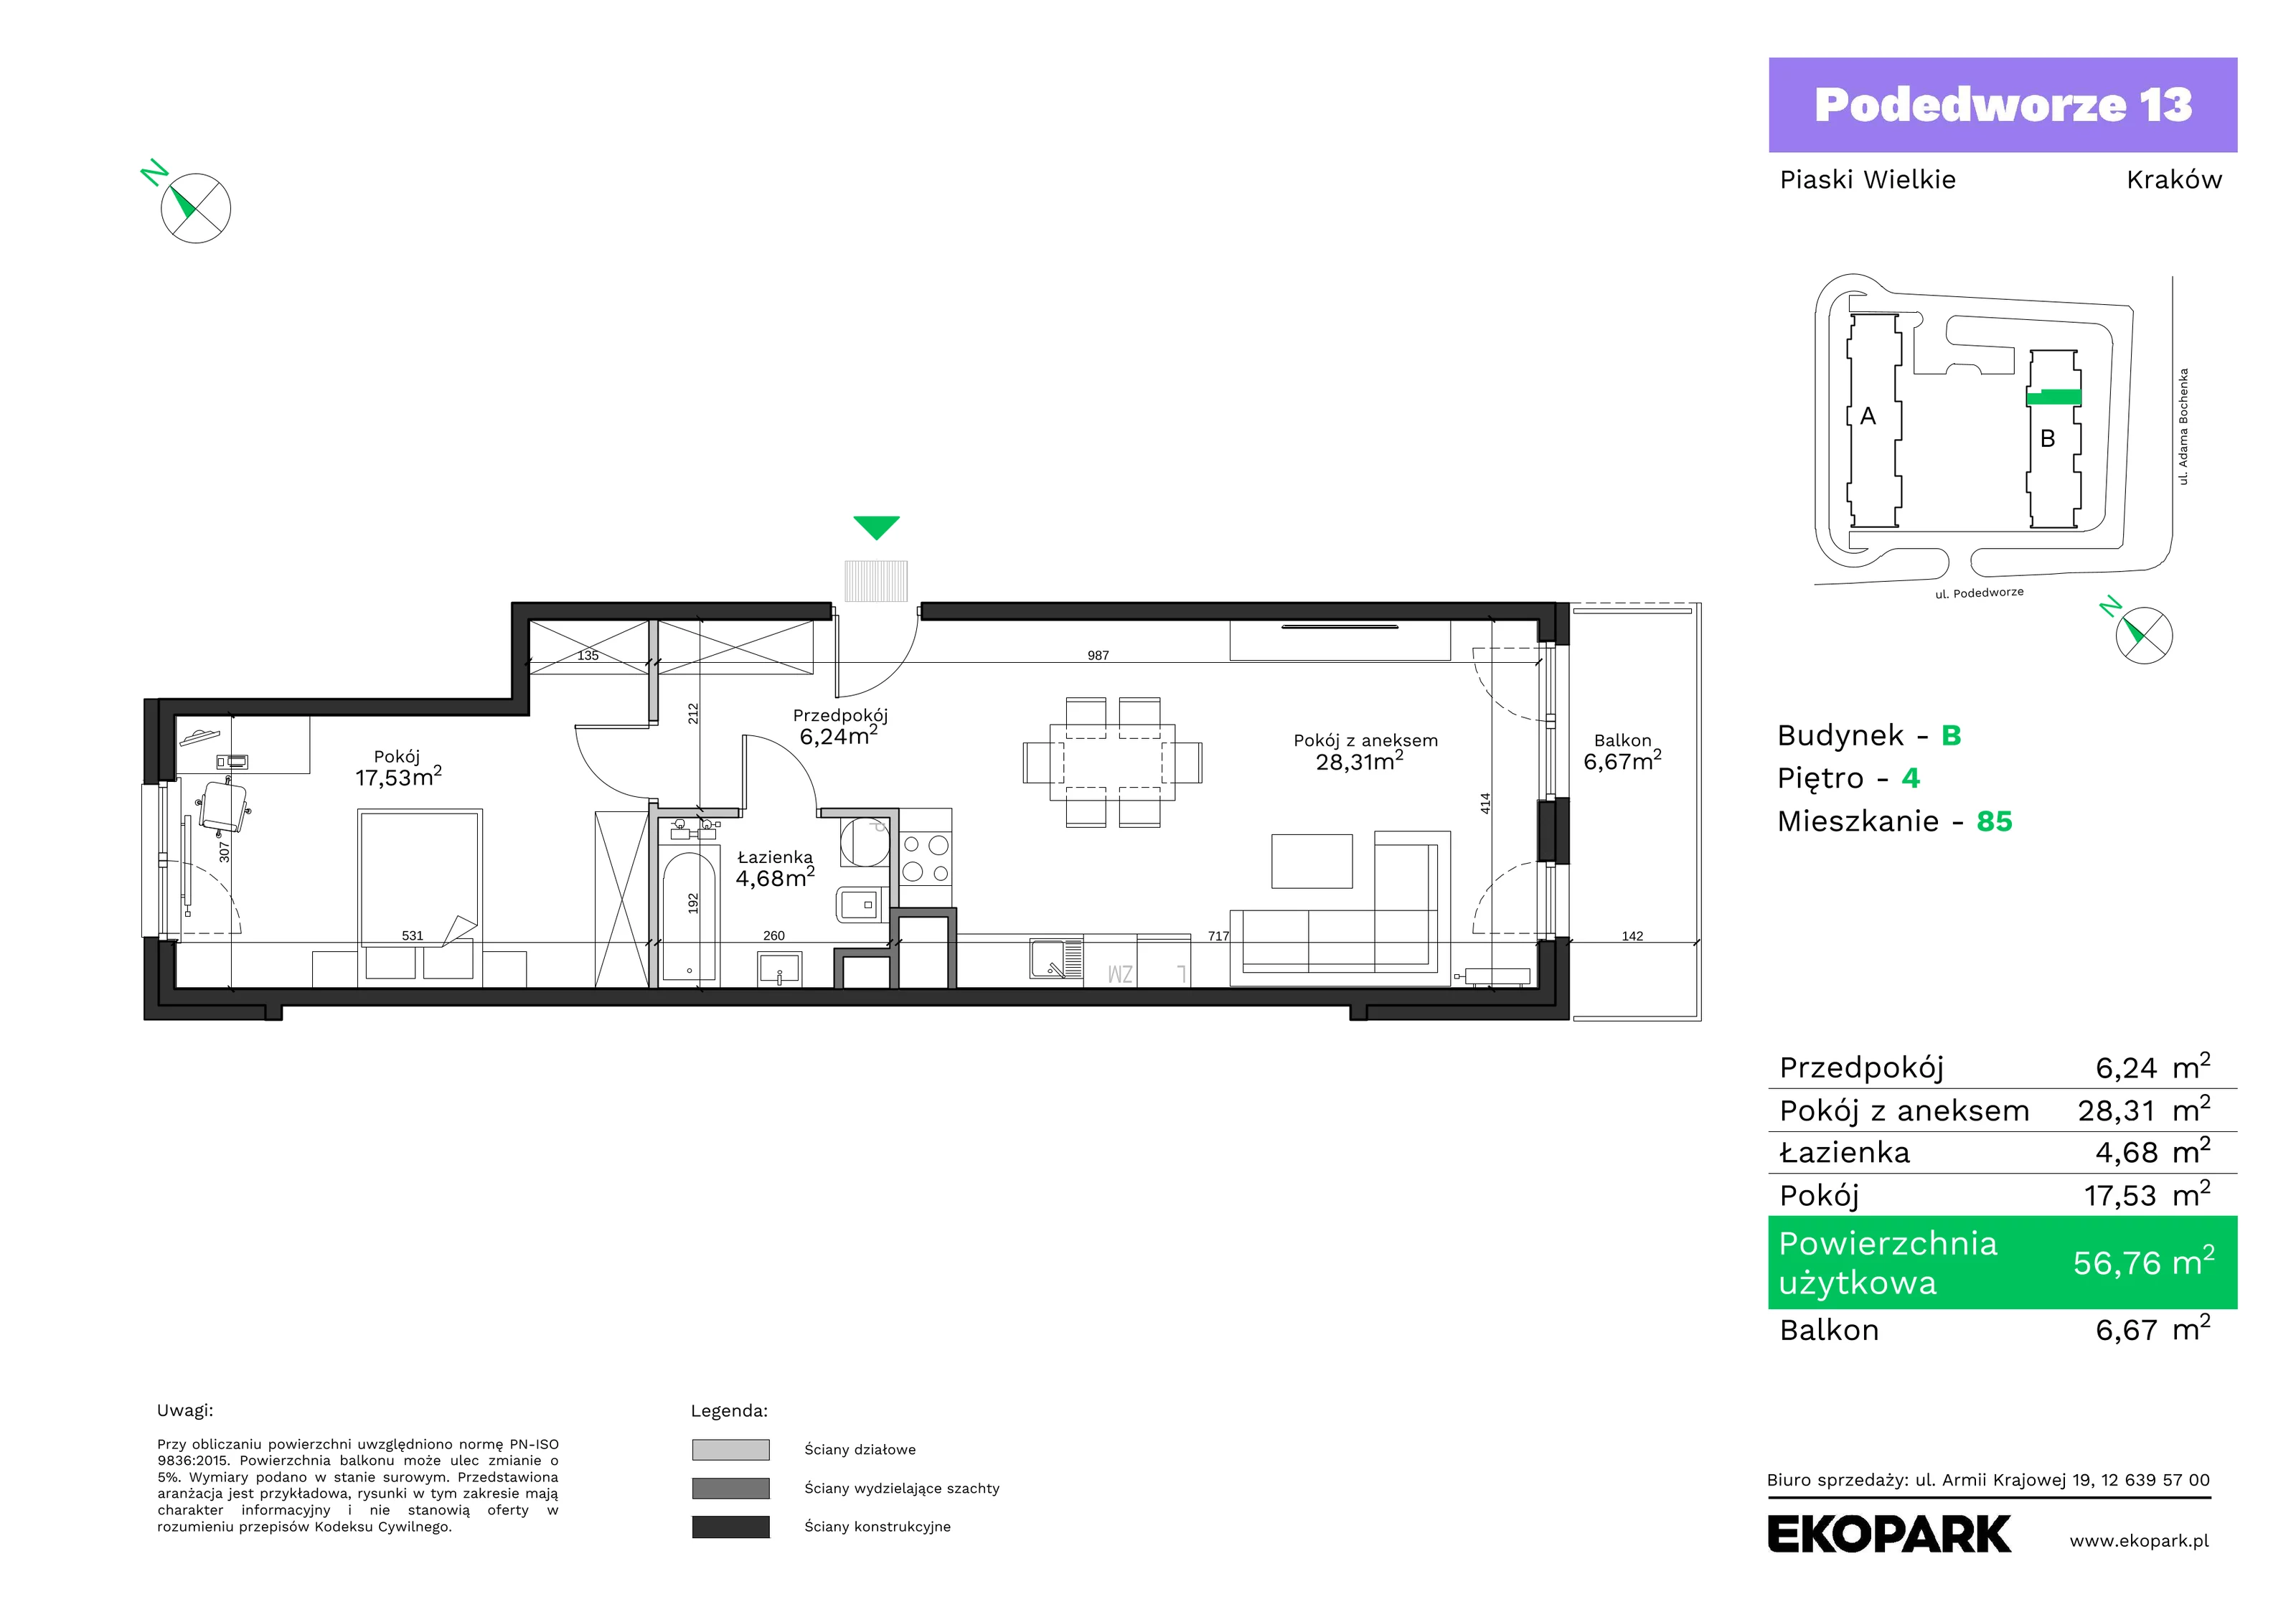 Mieszkanie 56,76 m², piętro 4, oferta nr B85, Podedworze 13, Kraków, Podgórze Duchackie, Piaski Wielkie, ul. Podedworze 13